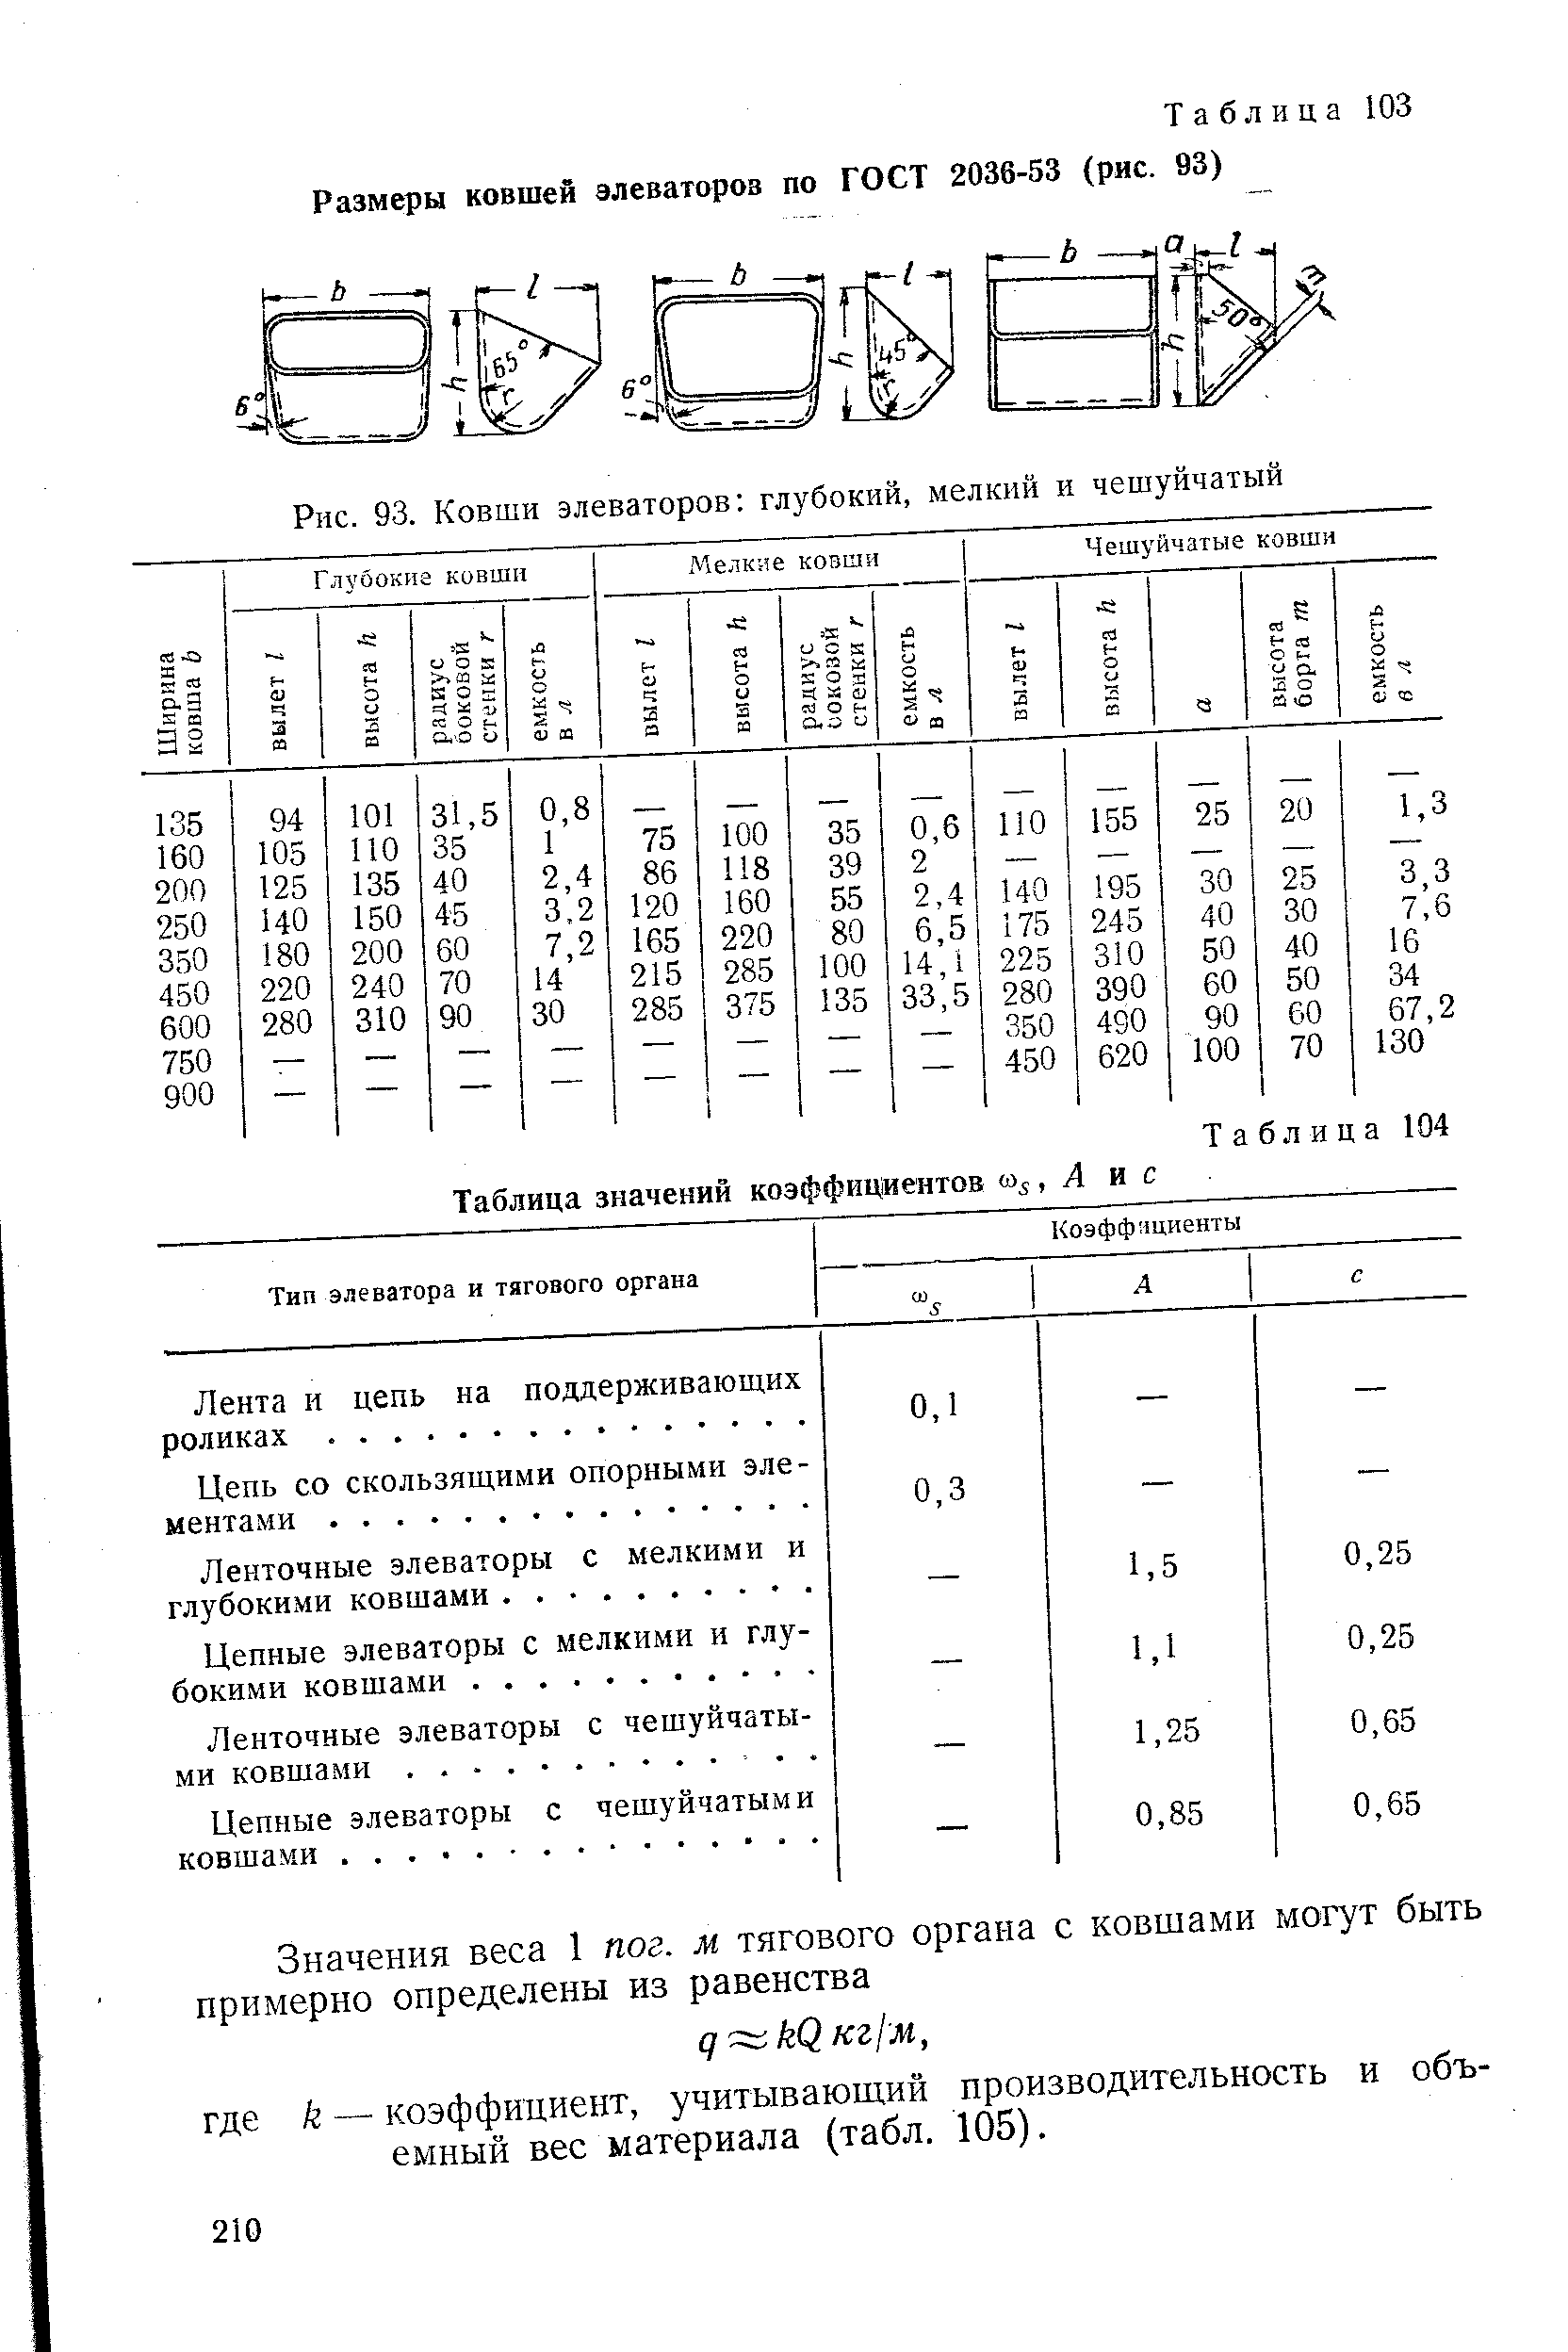 Таблица 103 Размеры ковшей элеваторов по ГОСТ 2036-53 (рис. 93)
